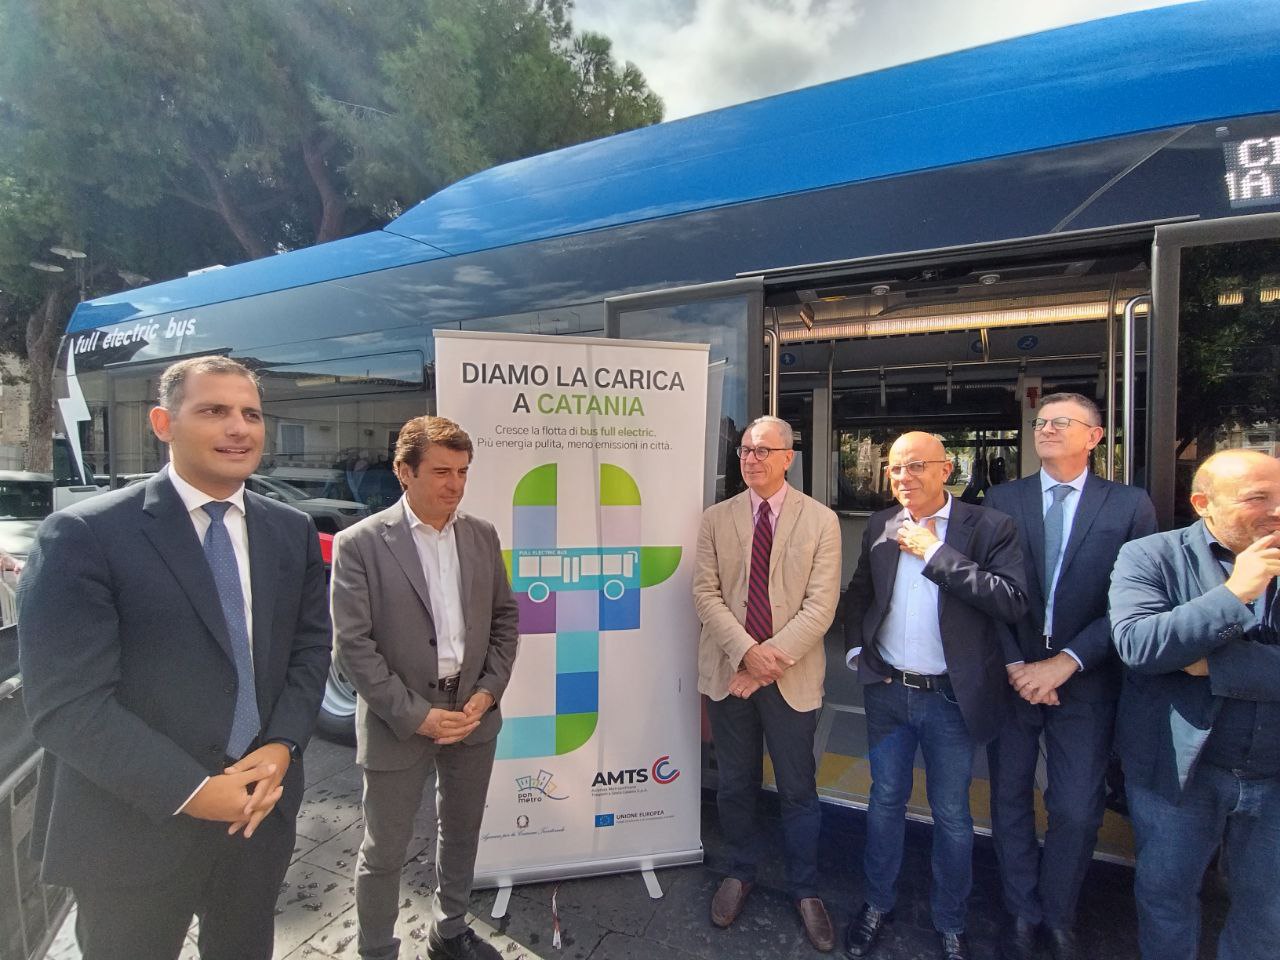 Amts “lancia” nuovi bus elettrici al Castello Ursino: “Verso la pedonalizzazione”